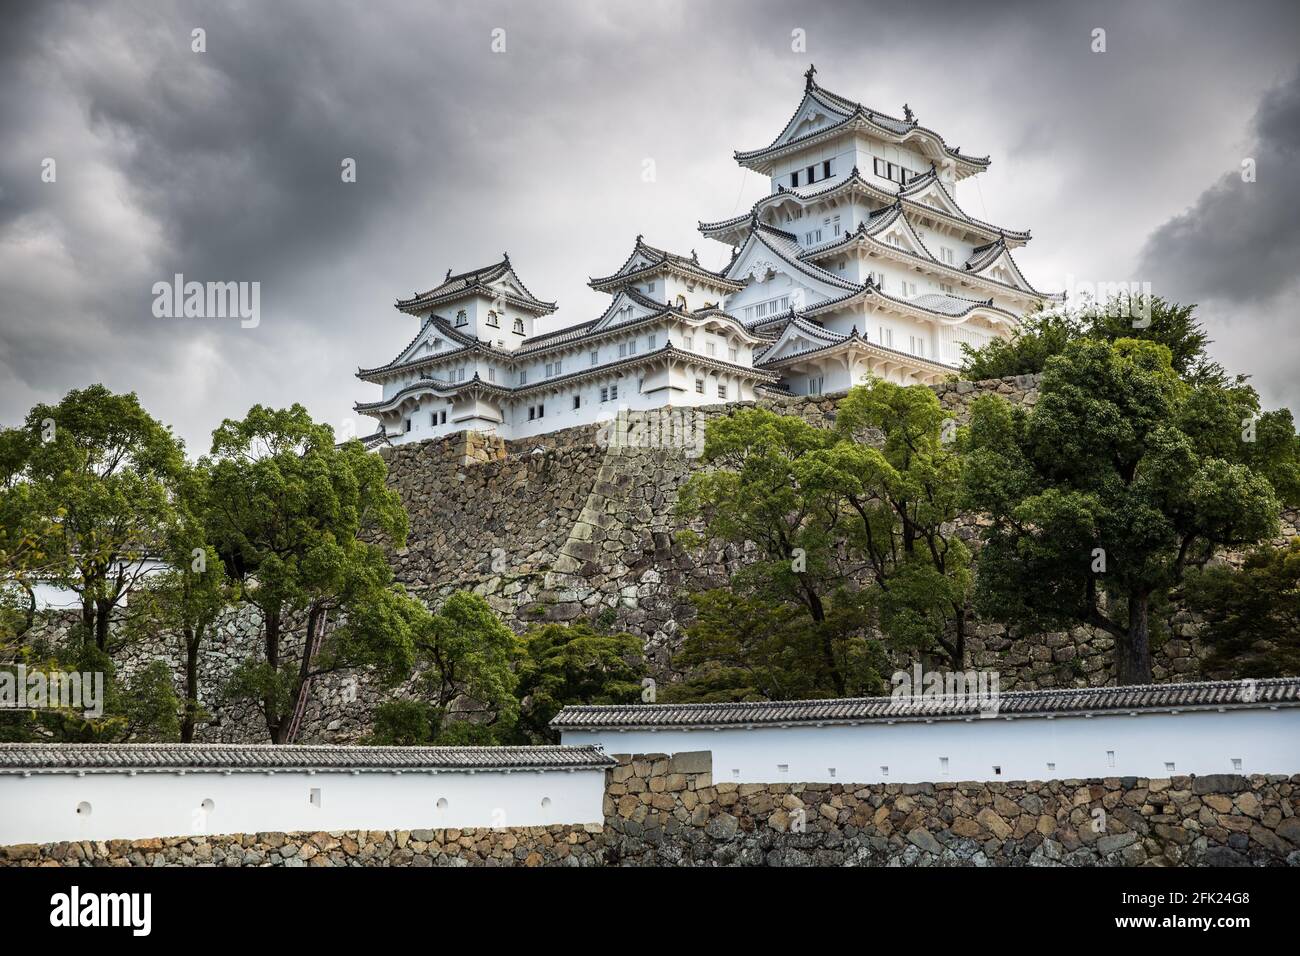 Château Himeji, Himeji-JO également connu sous le nom de Château de Héron blanc, Shirasagijo, est un château japonais perché dans la ville de Himeji, préfecture de Hyogo, Japon Banque D'Images